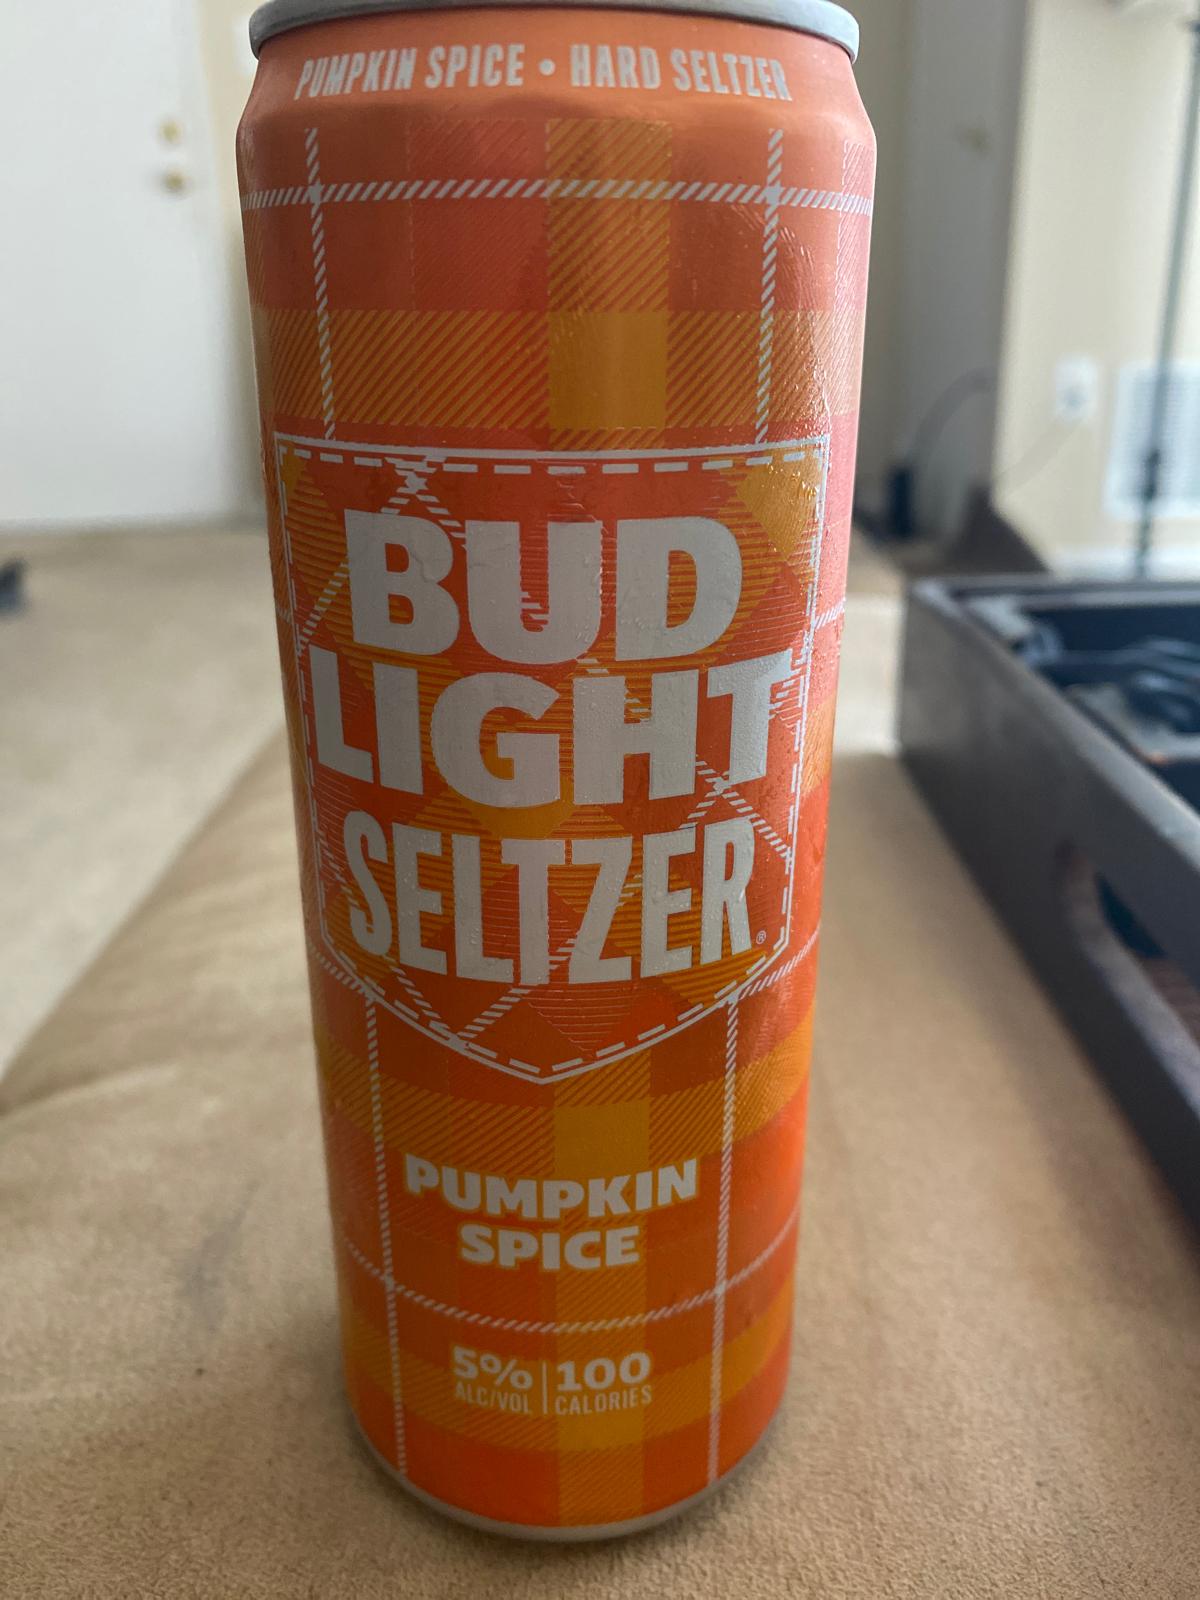 Bud Light Seltzer Pumpkin Spice